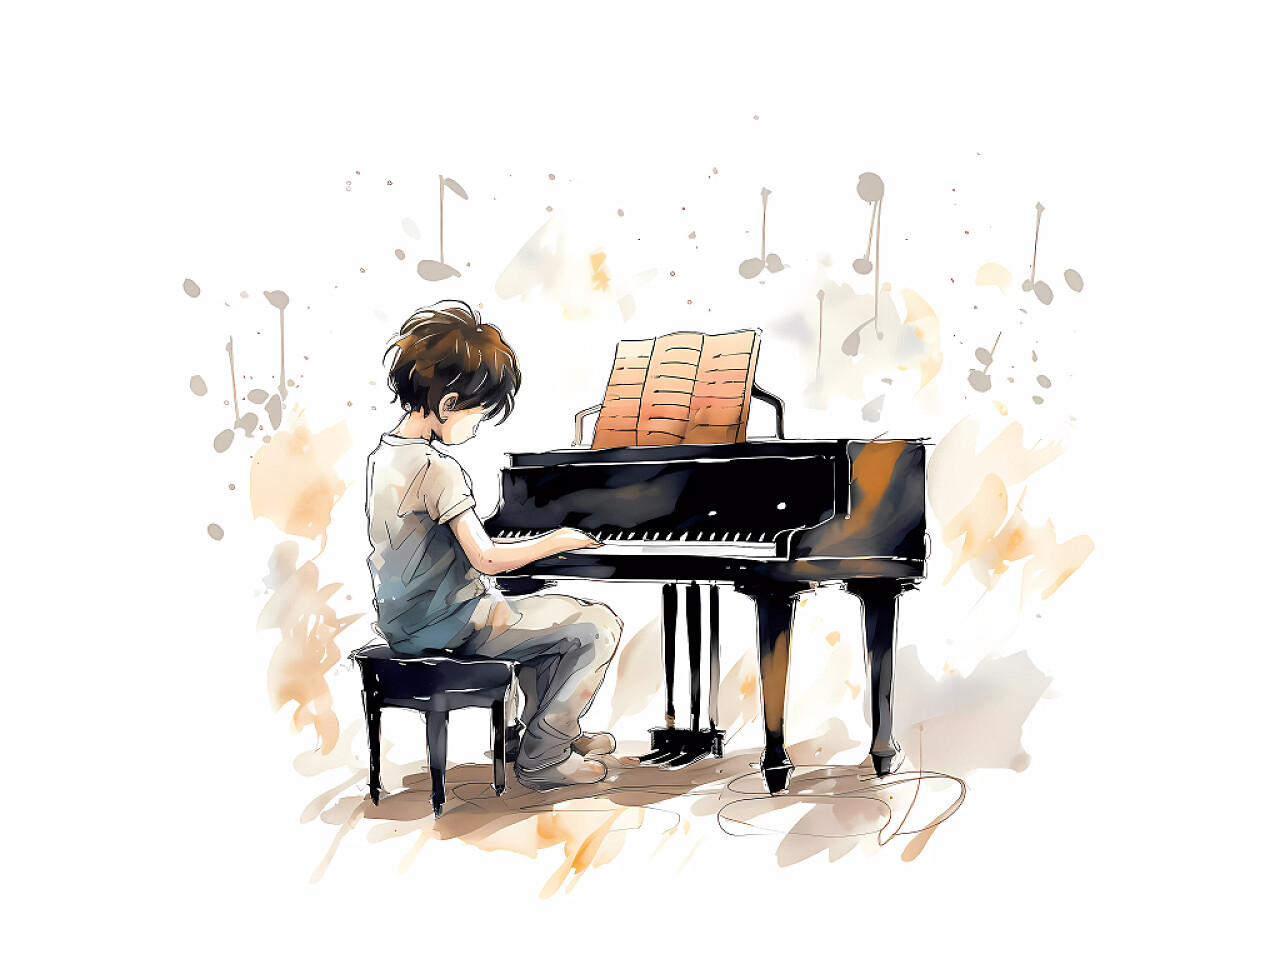 艺术教育钢琴培训班招生卡通人物女孩弹钢琴场景